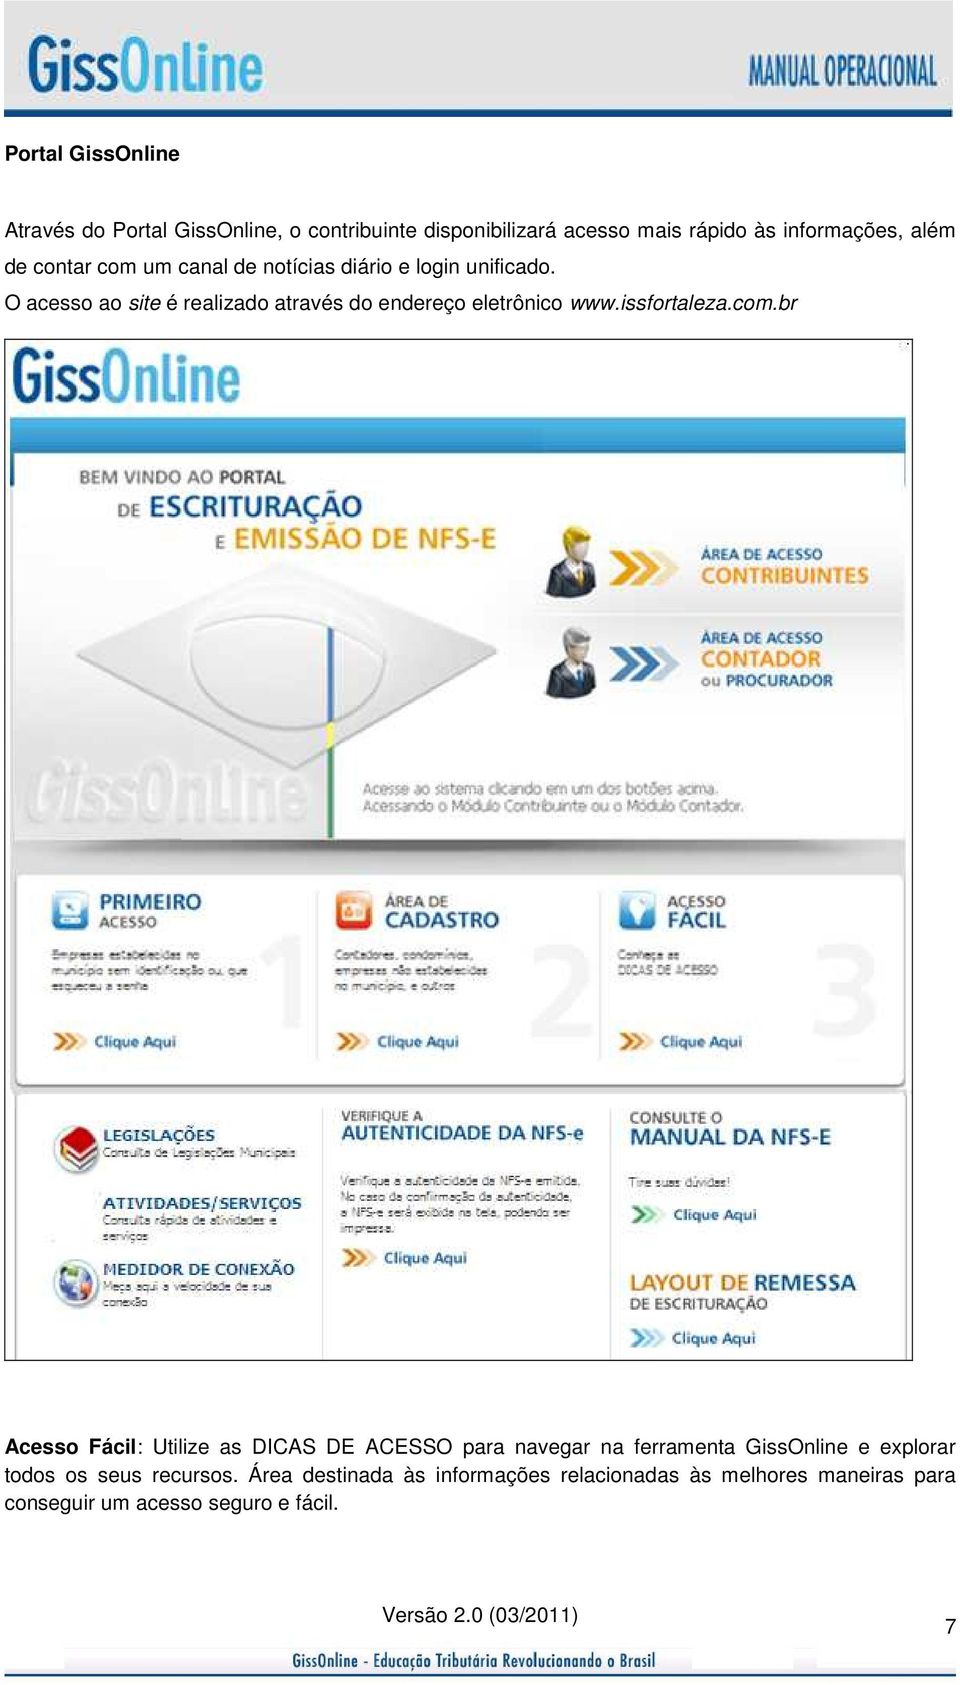 O acesso ao site é realizado através do endereço eletrônico www.issfortaleza.com.